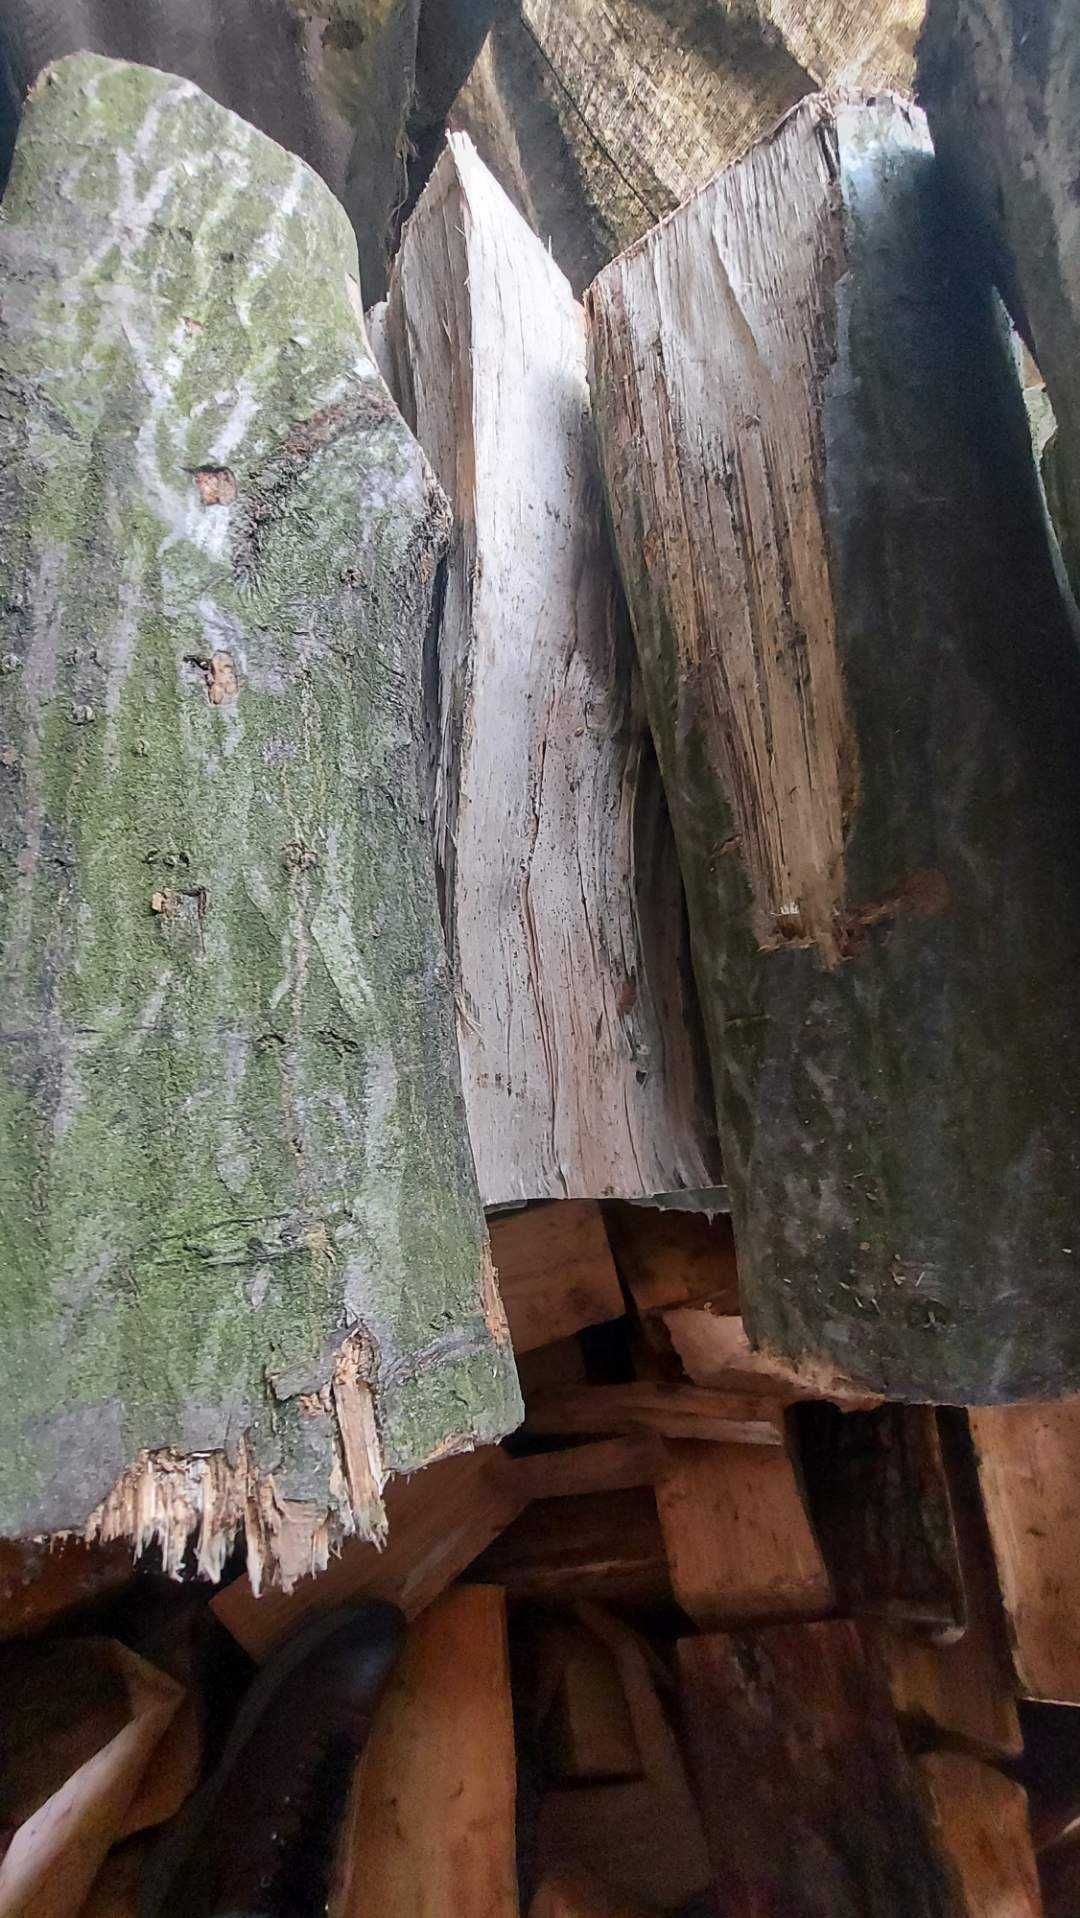 drewno opałowe kominkowe grab dąb jesion brzoza lub mieszane 30-40 cm